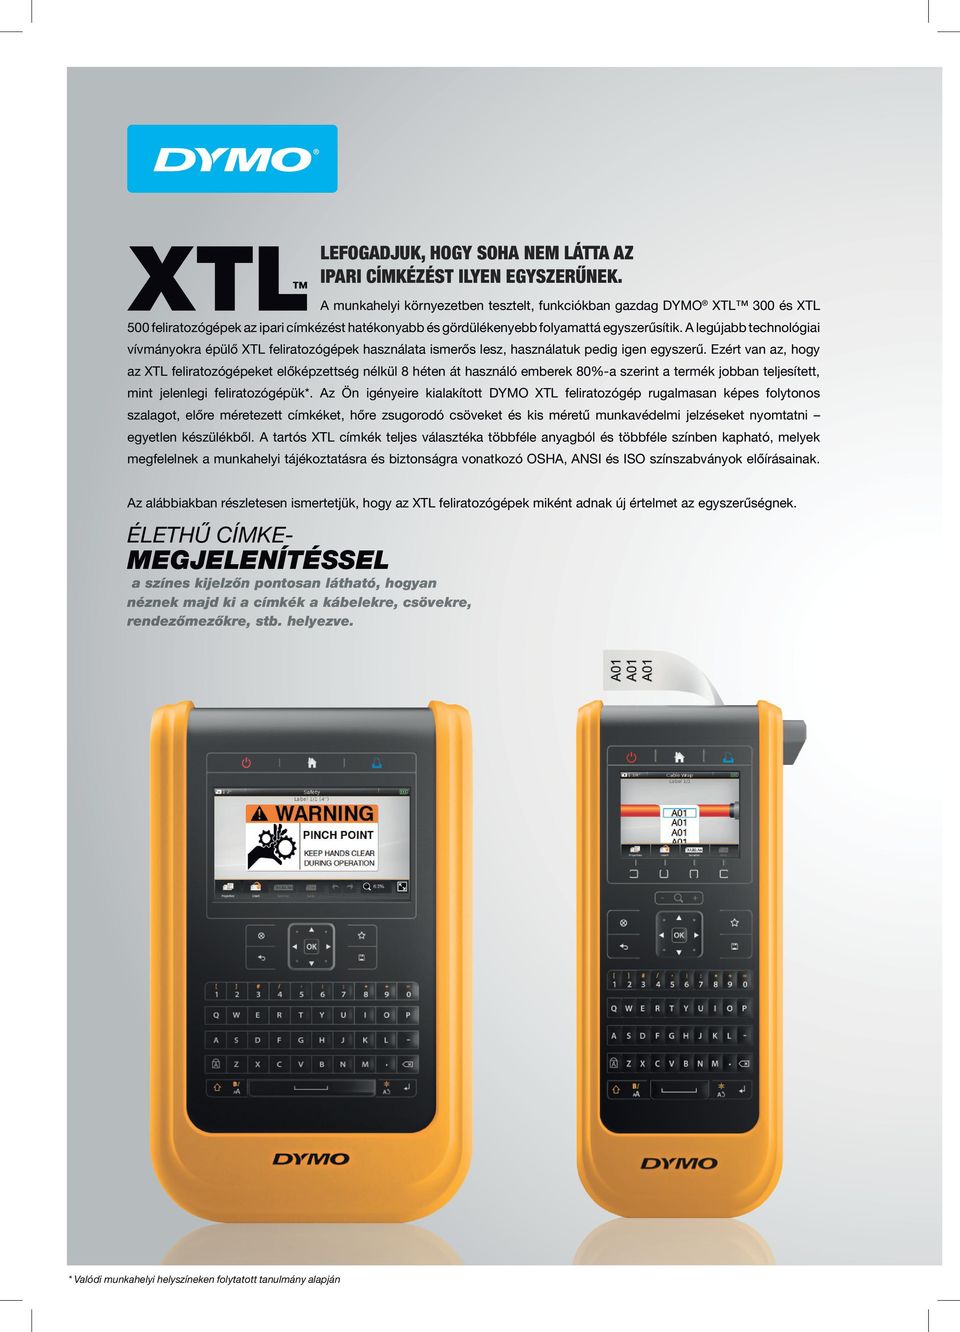 A legújabb technológiai vívmányokra épülő XTL feliratozógépek használata ismerős lesz, használatuk pedig igen egyszerű.